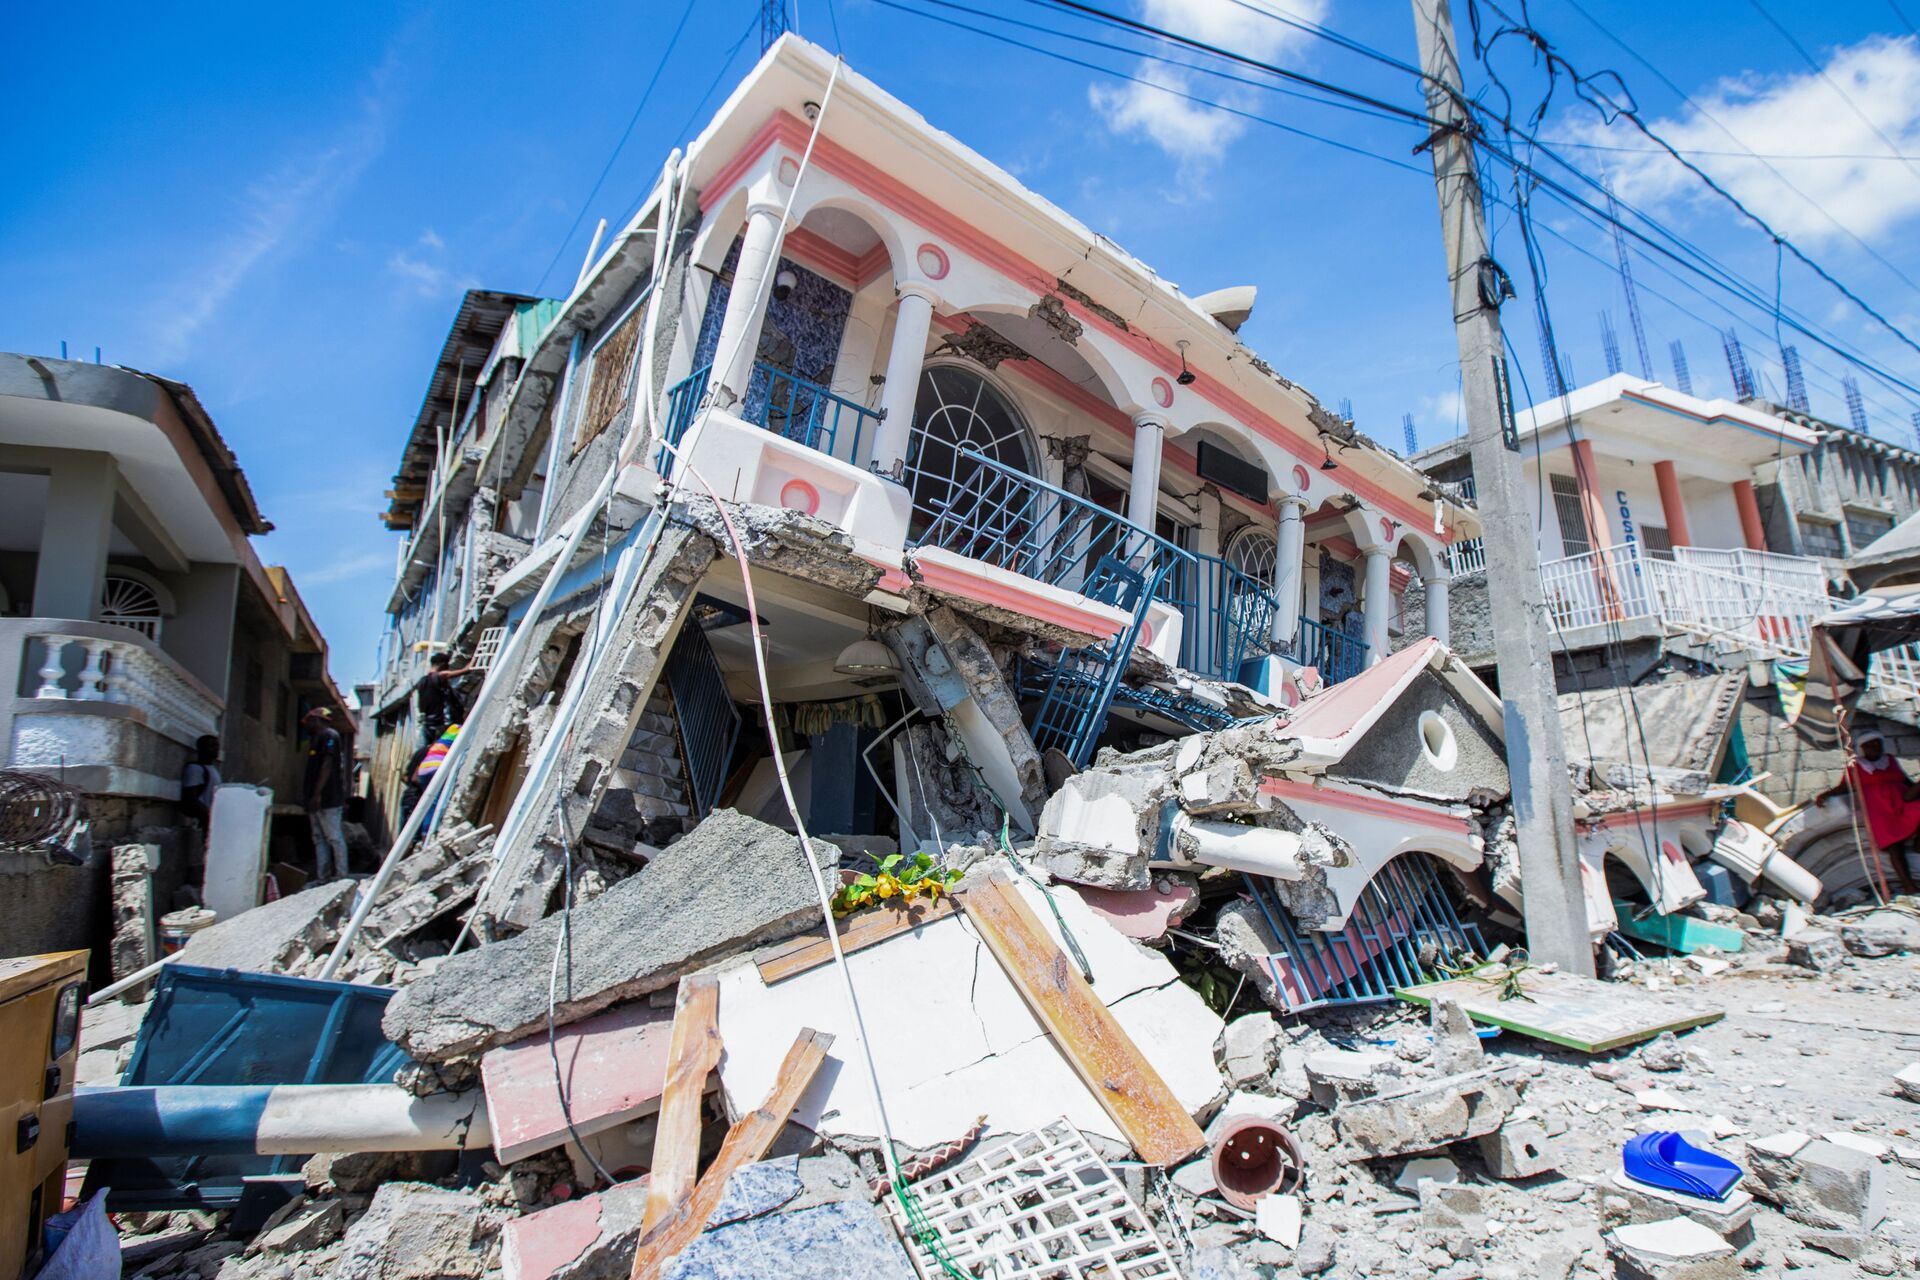 Brasil enviará missão humanitária e remédios ao Haiti após terremoto que matou mais de 2 mil pessoas - Sputnik Brasil, 1920, 19.08.2021